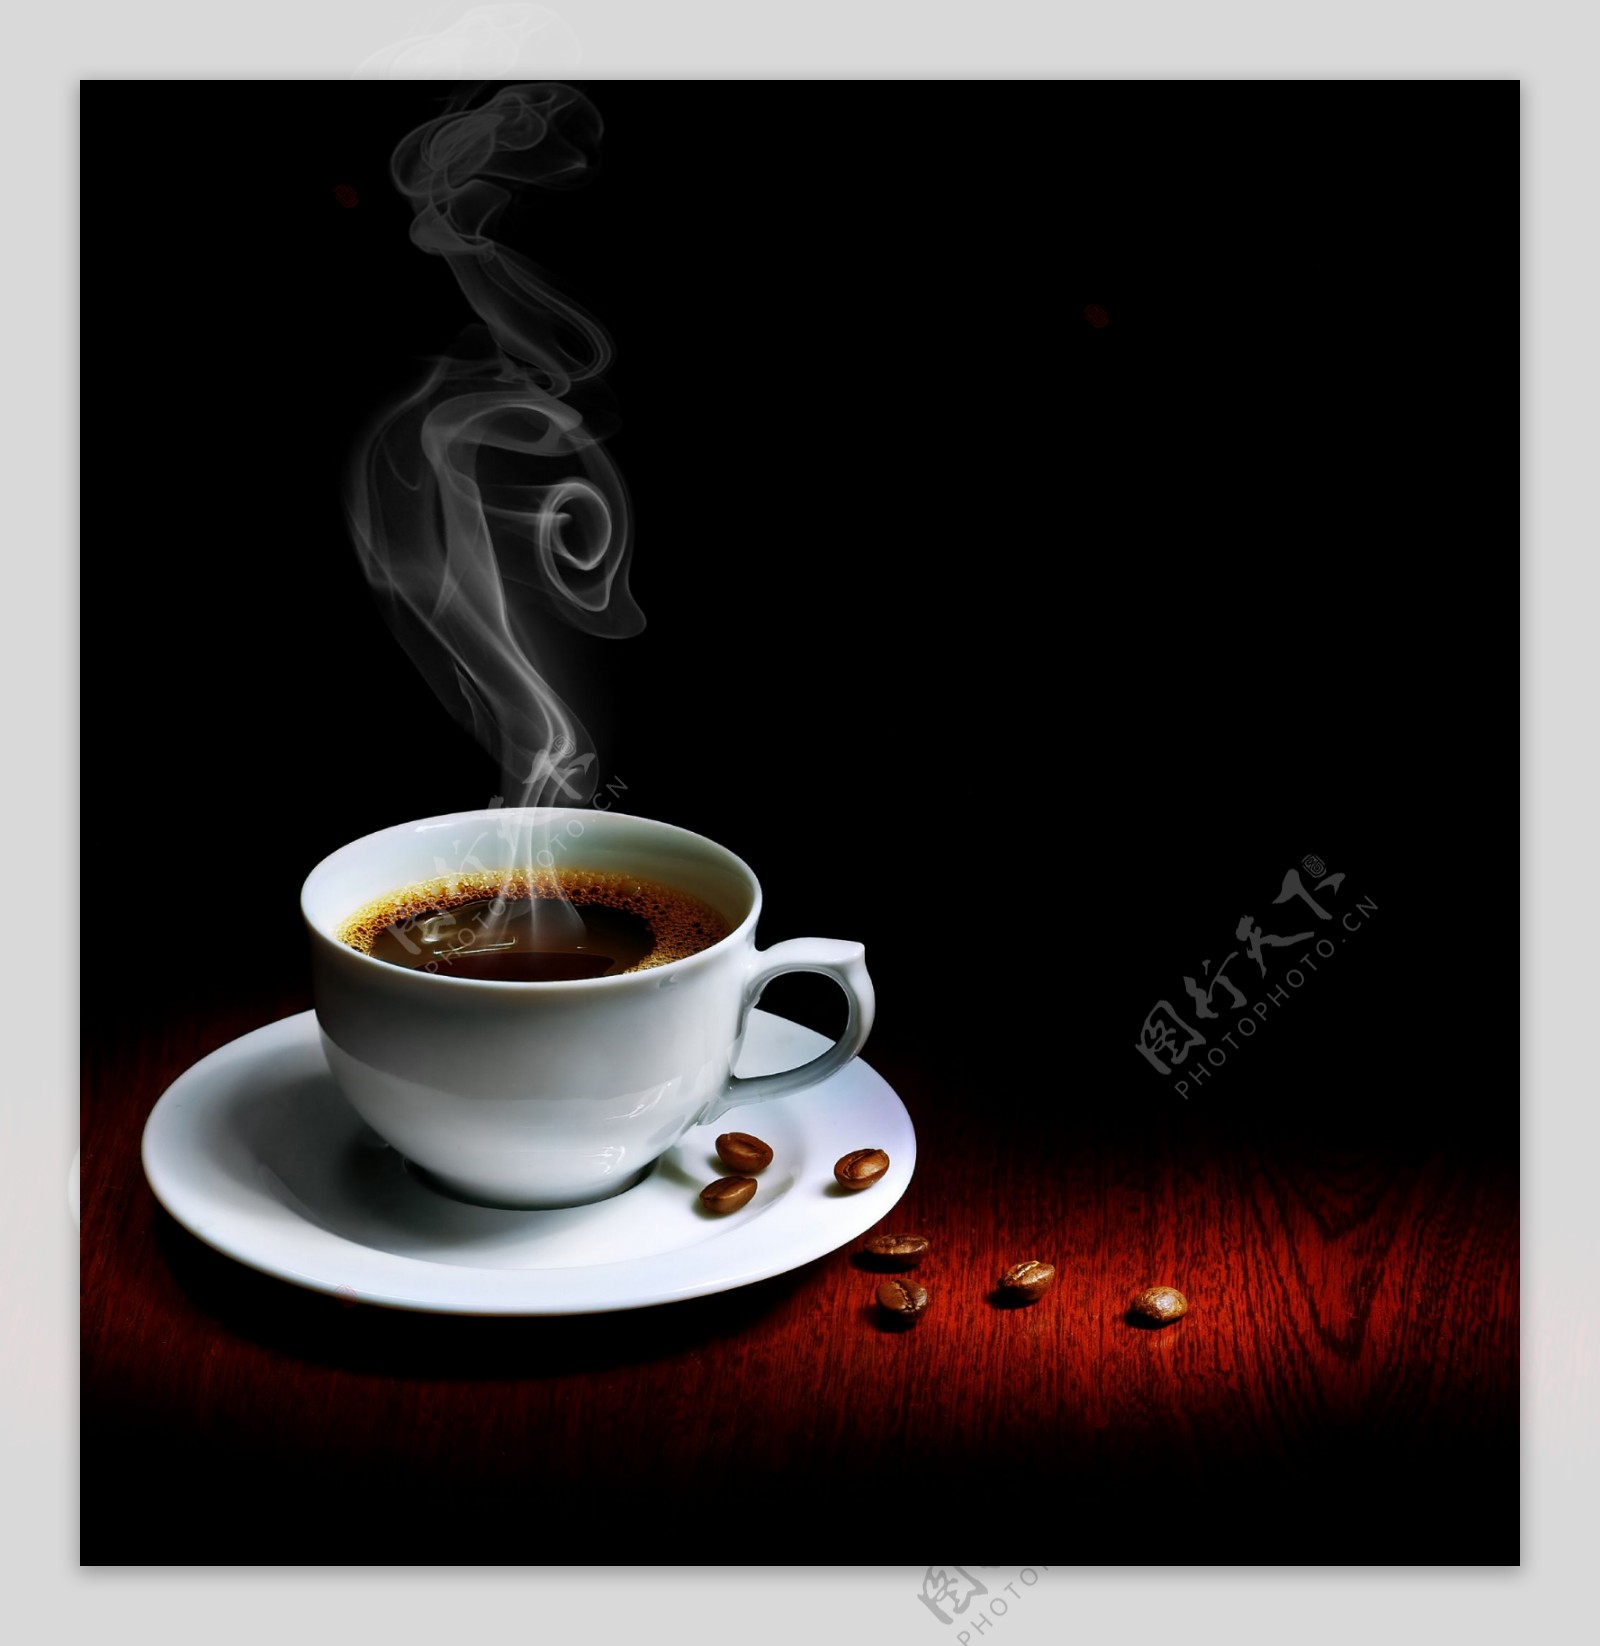 蒸热咖啡杯的JPEG